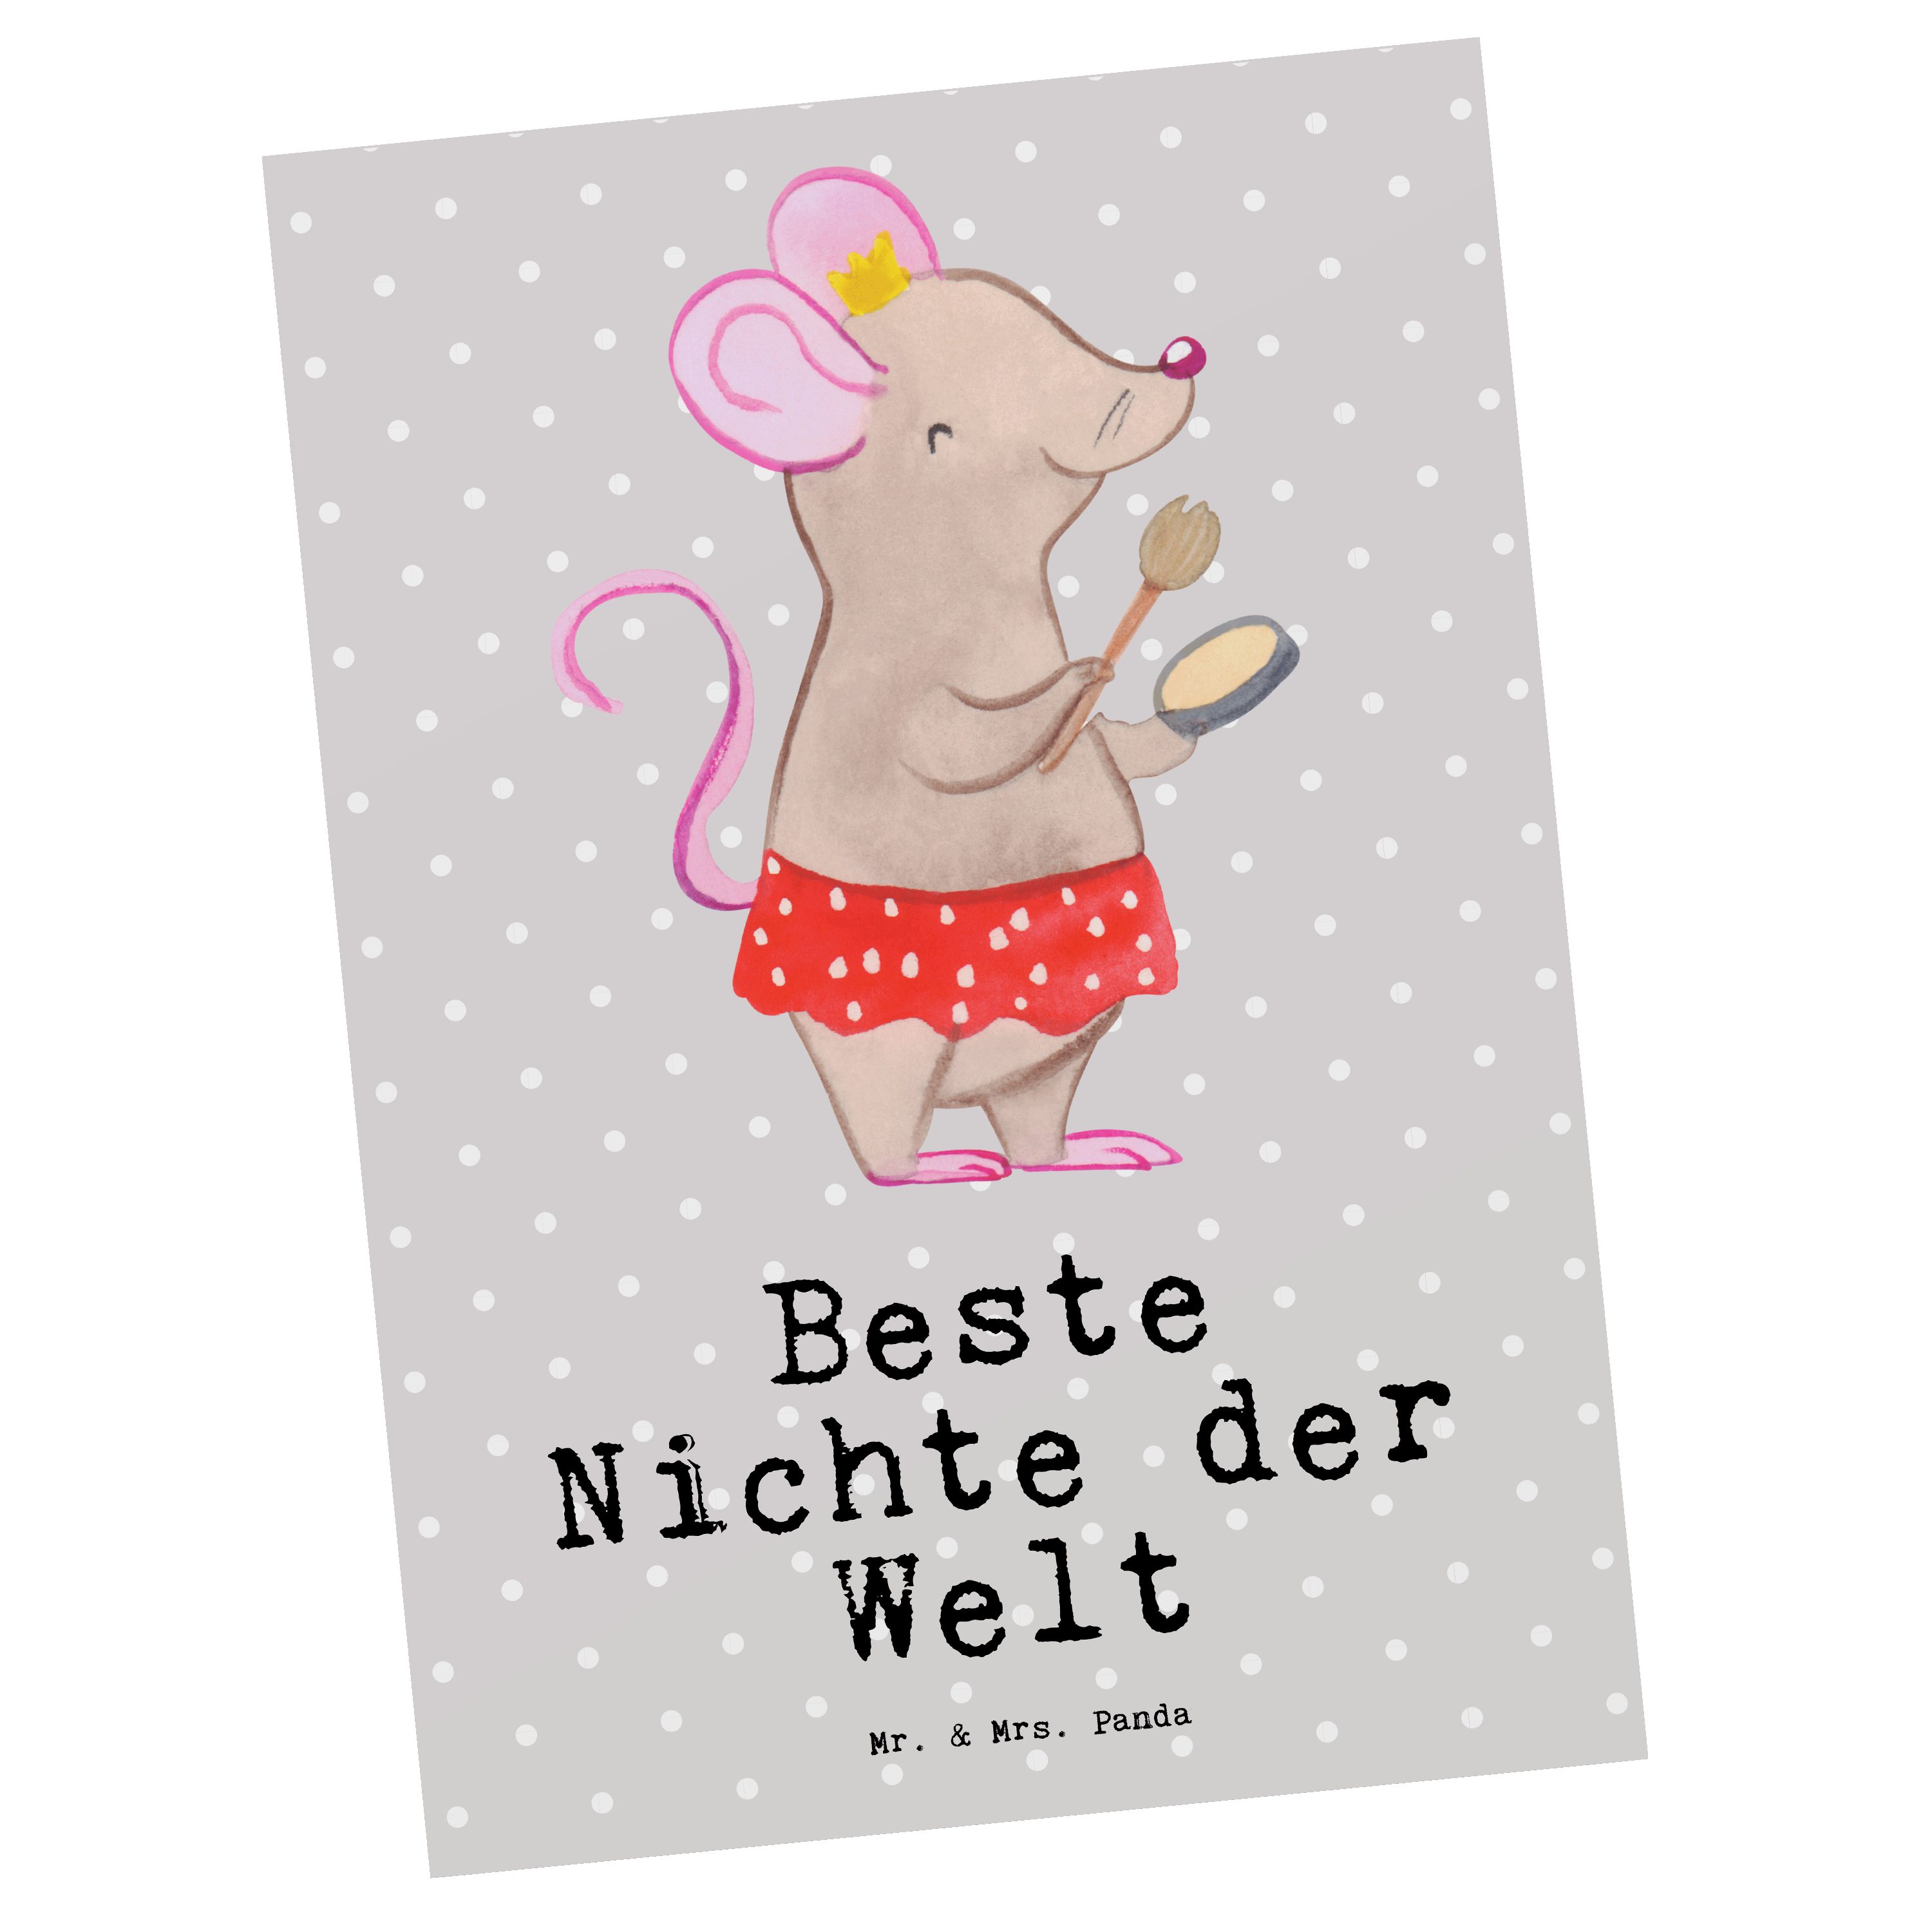 Mr. & Mrs. Panda Welt Tochter Postkarte - Nichte Maus Sch Pastell - Geschenk, der der Beste Grau